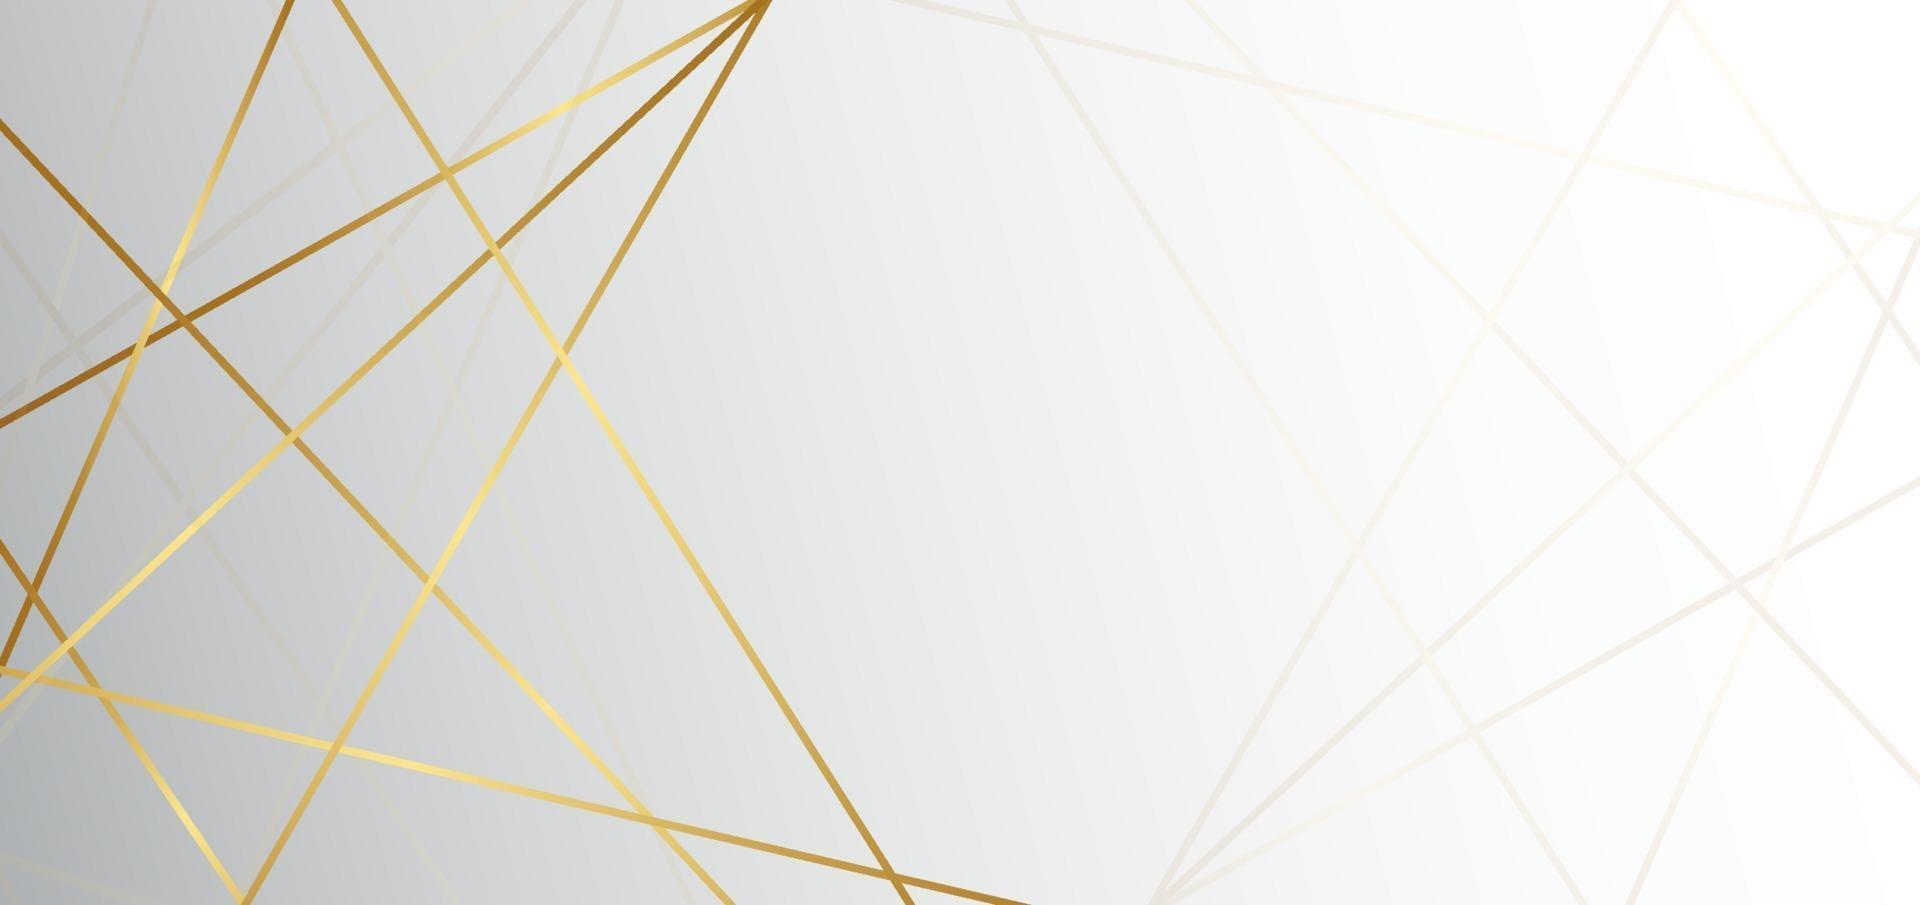 abstrato base triângulo branco e cinza com linha dourada luxo. você pode usar para anúncio, pôster, modelo, apresentação de negócios. vetor